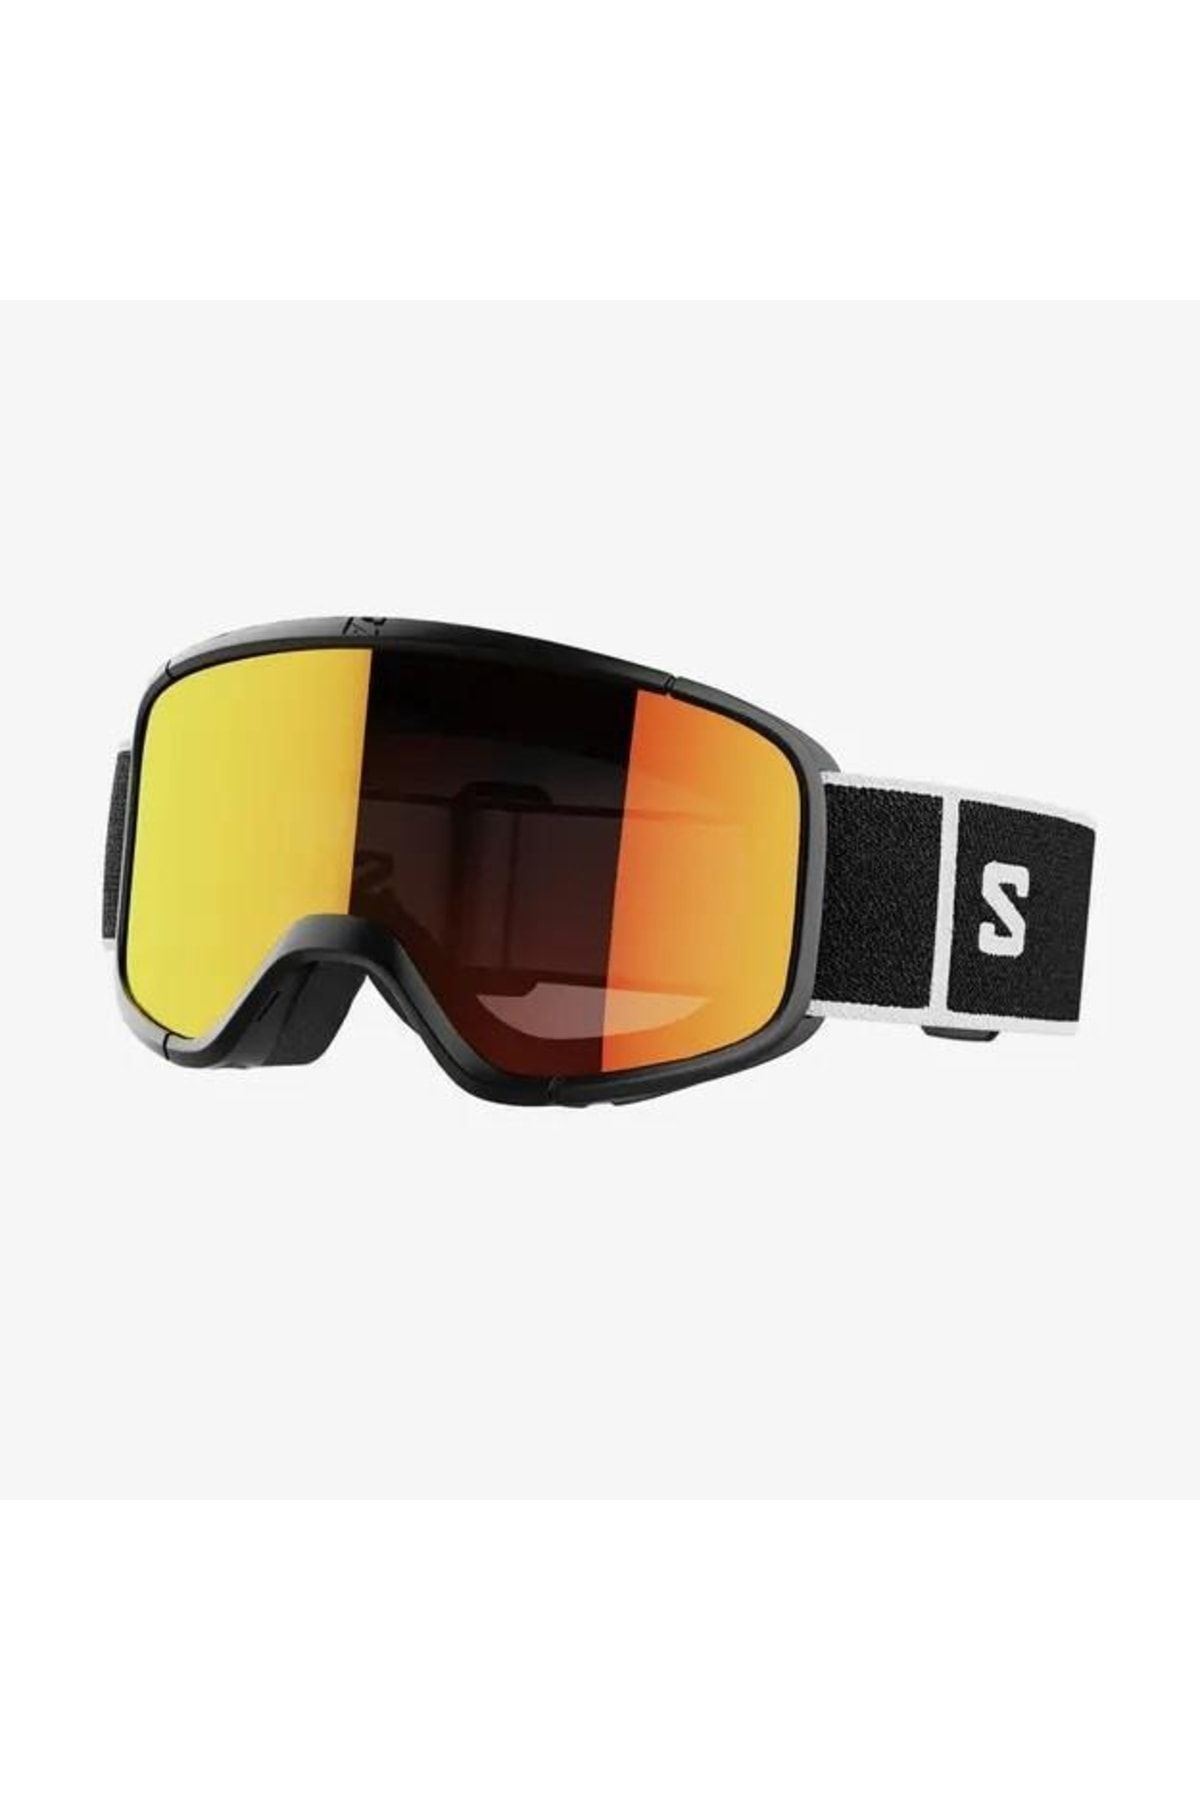 Salomon Aksium 2.0 S Goggle Unisex Kayak/snowboard Gözlük-l41783600blk